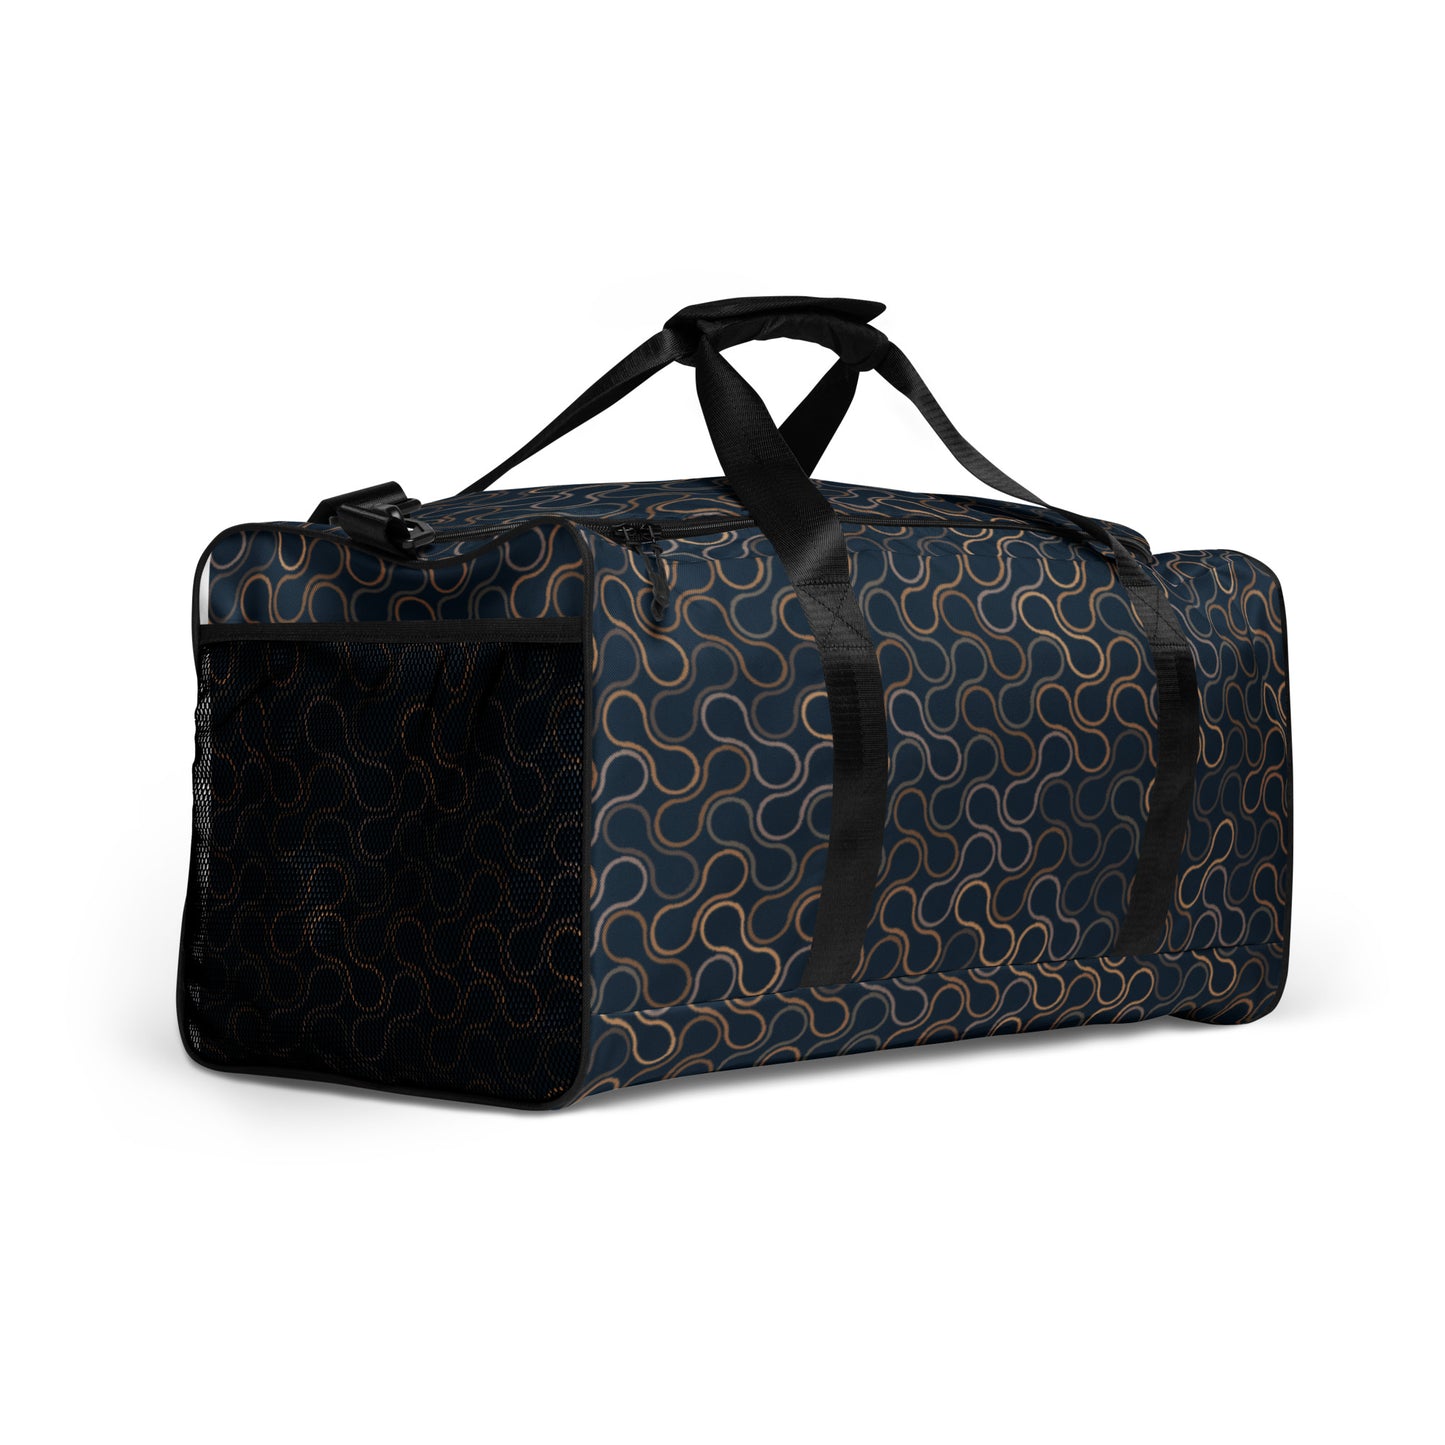 Elegant - Sustainably Made Duffle Bag